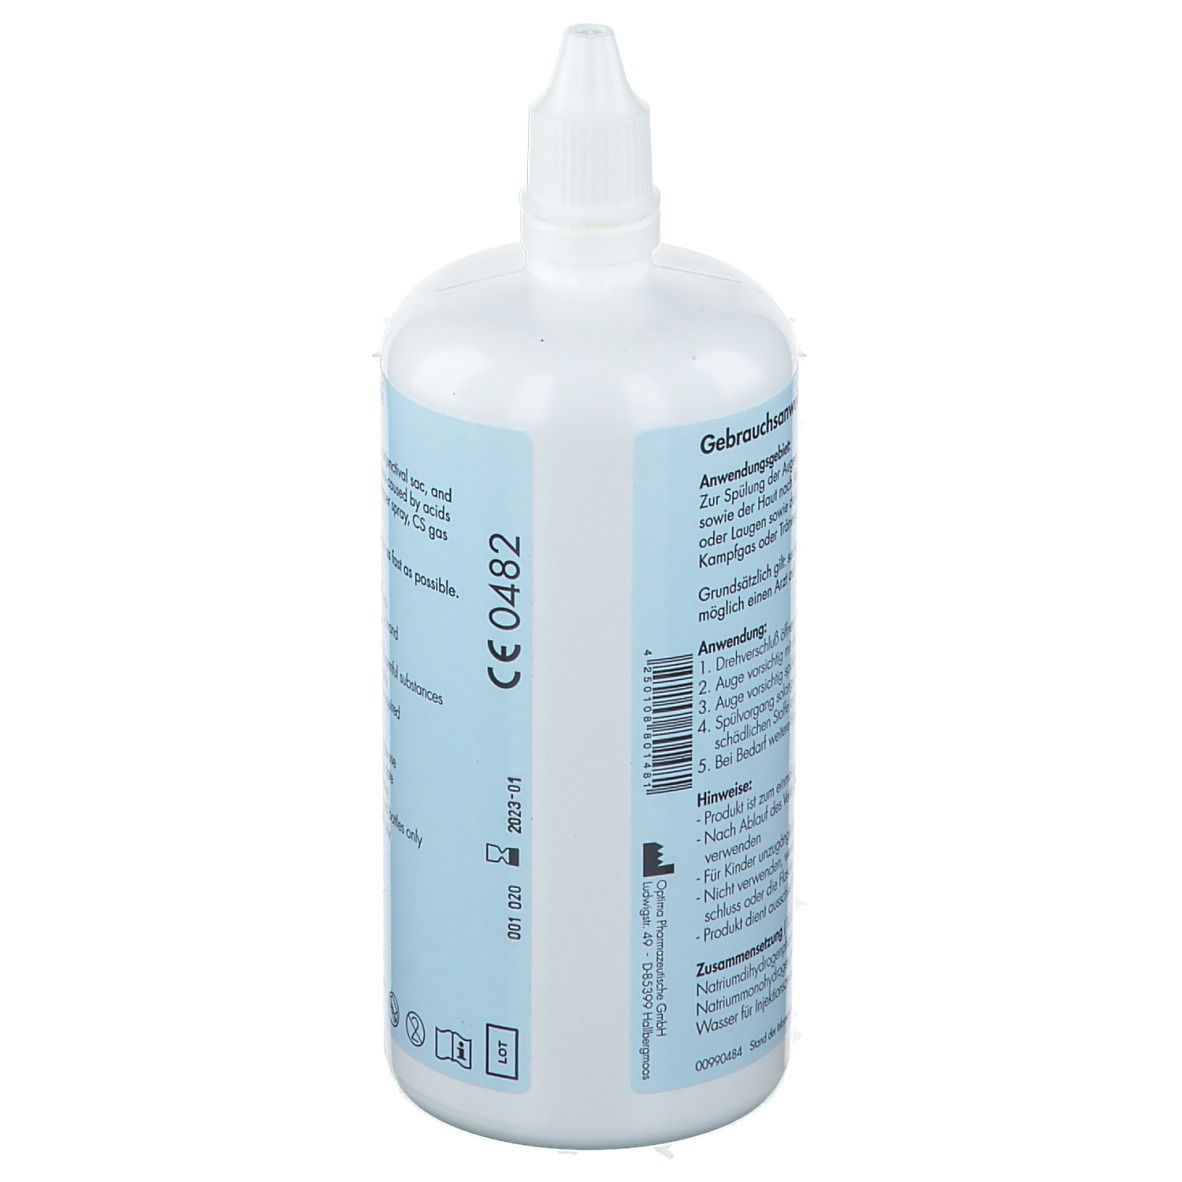 Oculav NIT® Augenspülung 250 ml Sterillösung, f. sofortiges Spülen